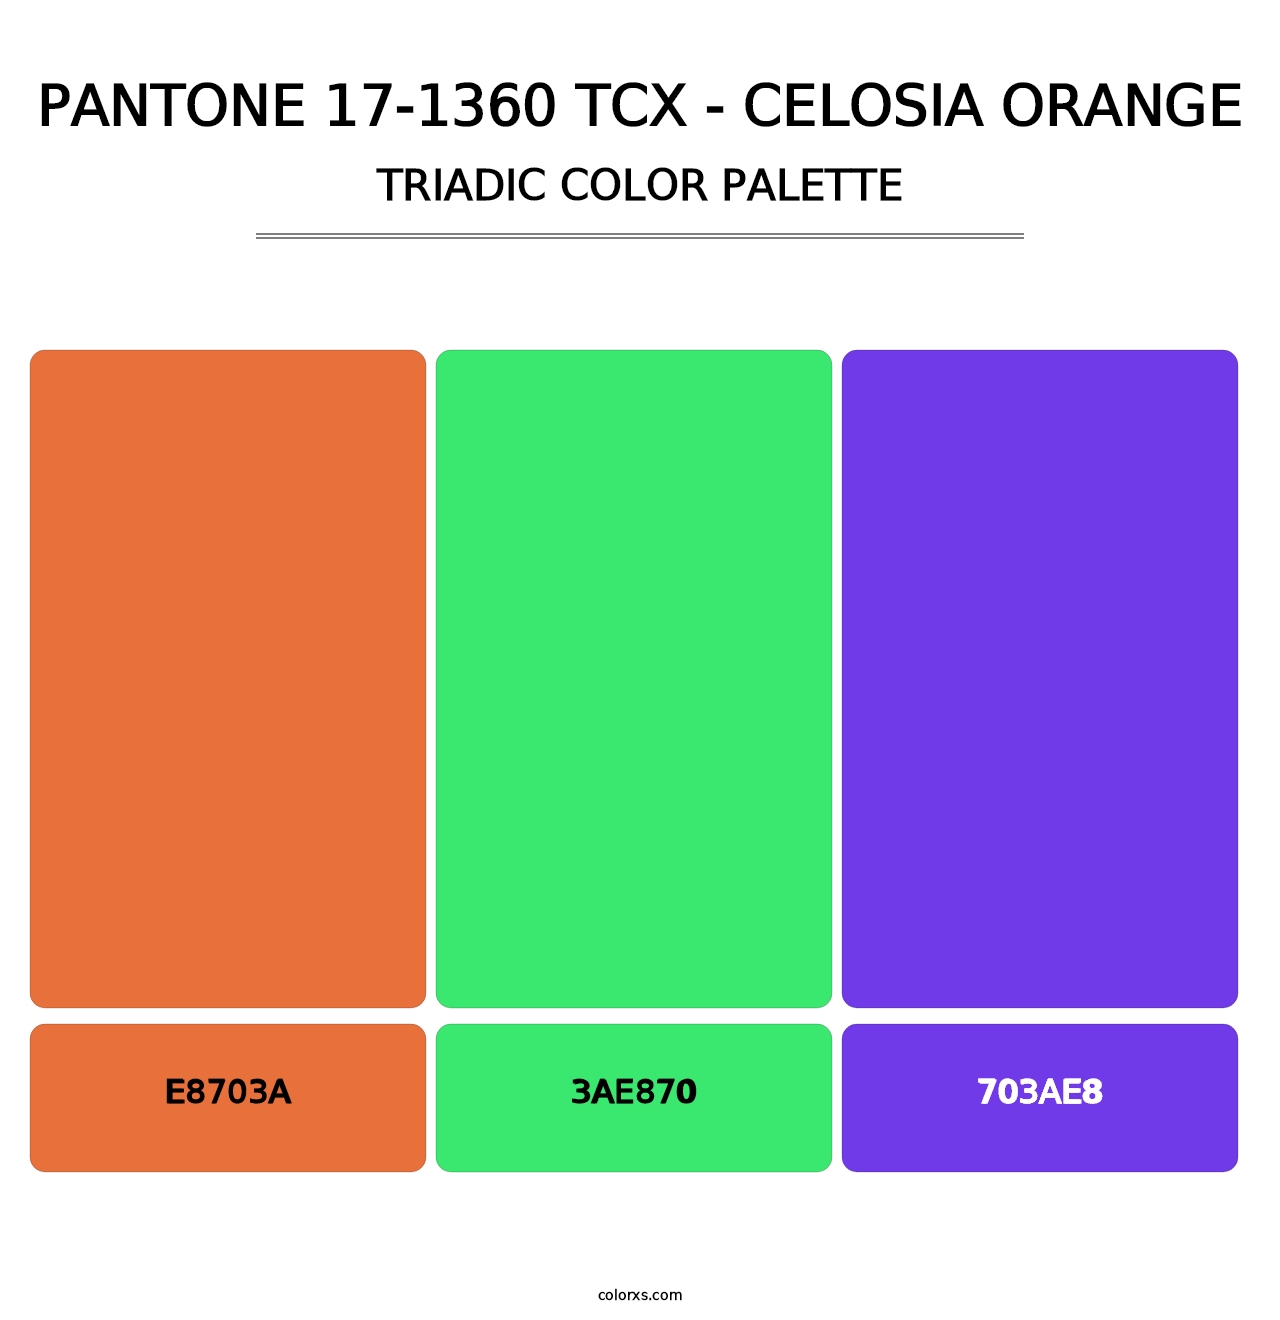 PANTONE 17-1360 TCX - Celosia Orange - Triadic Color Palette